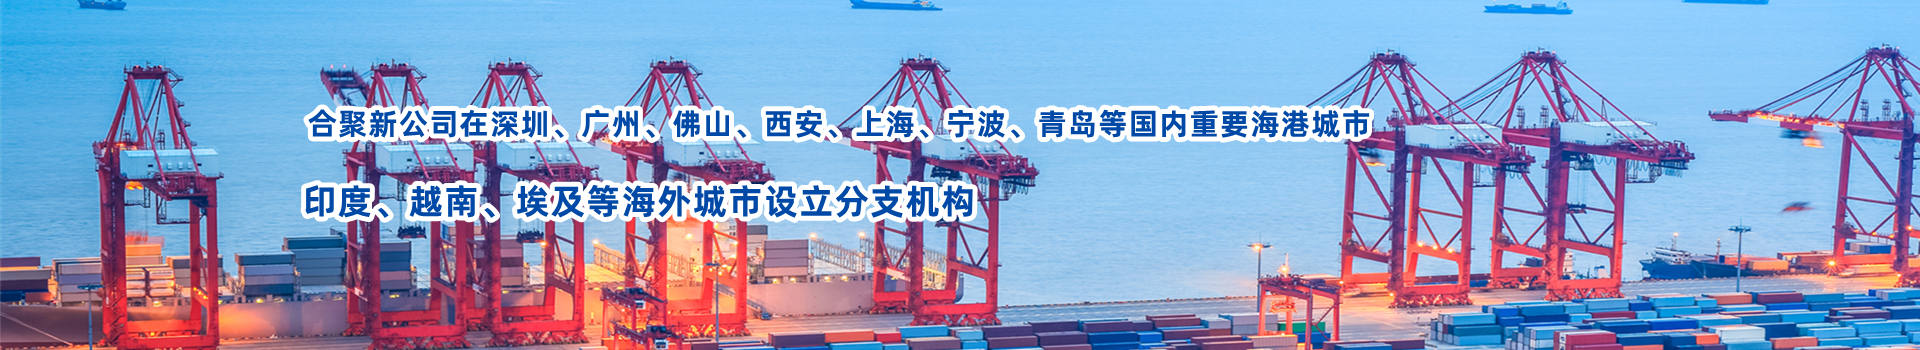 深圳国际海运货代公司